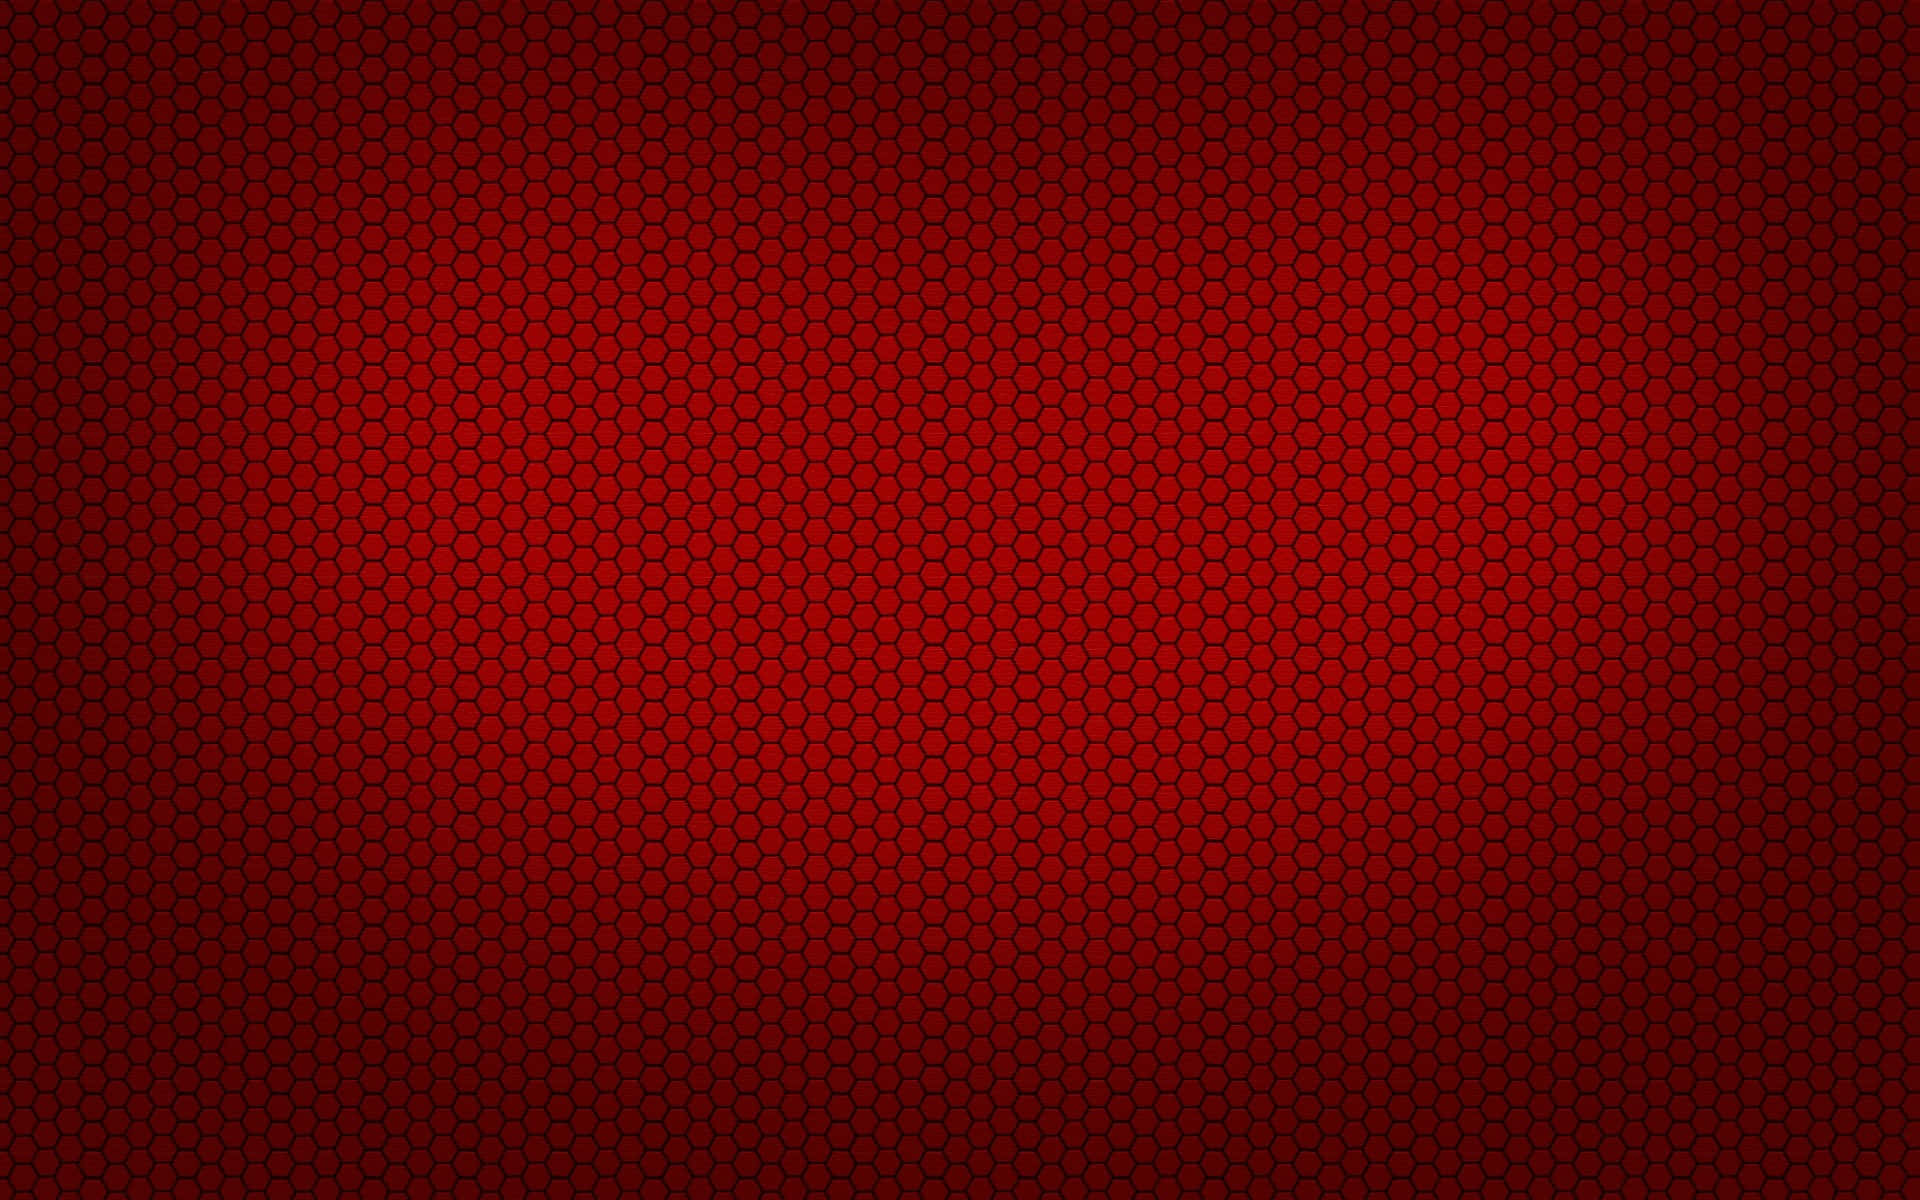 Vibrant Plain Red Background